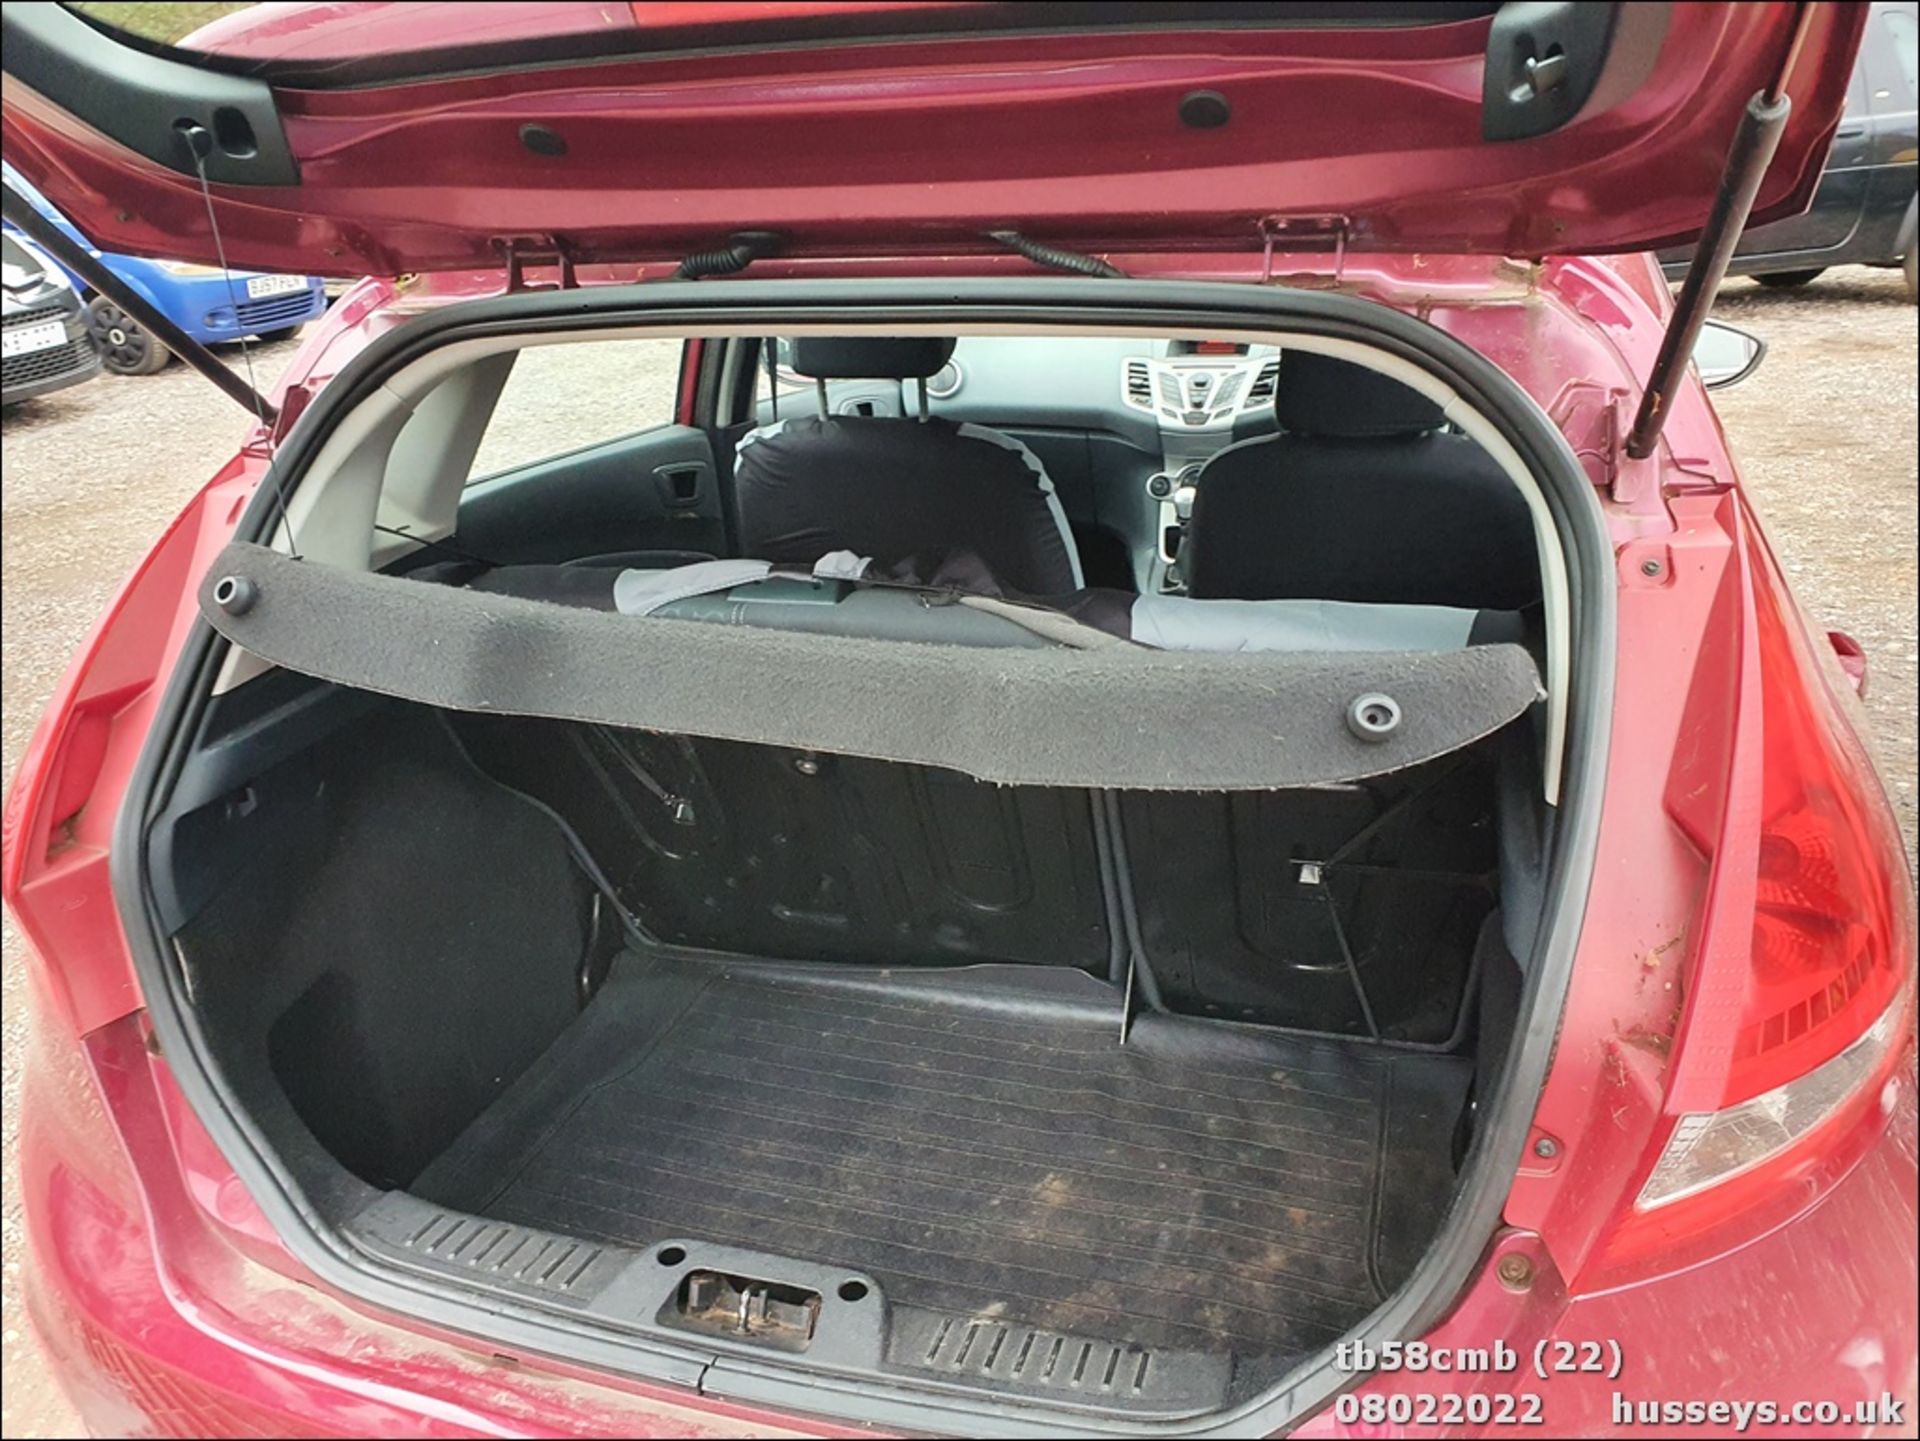 08/58 FORD FIESTA ZETEC 96 - 1388cc 5dr Hatchback (Red, 101k) - Image 22 of 26